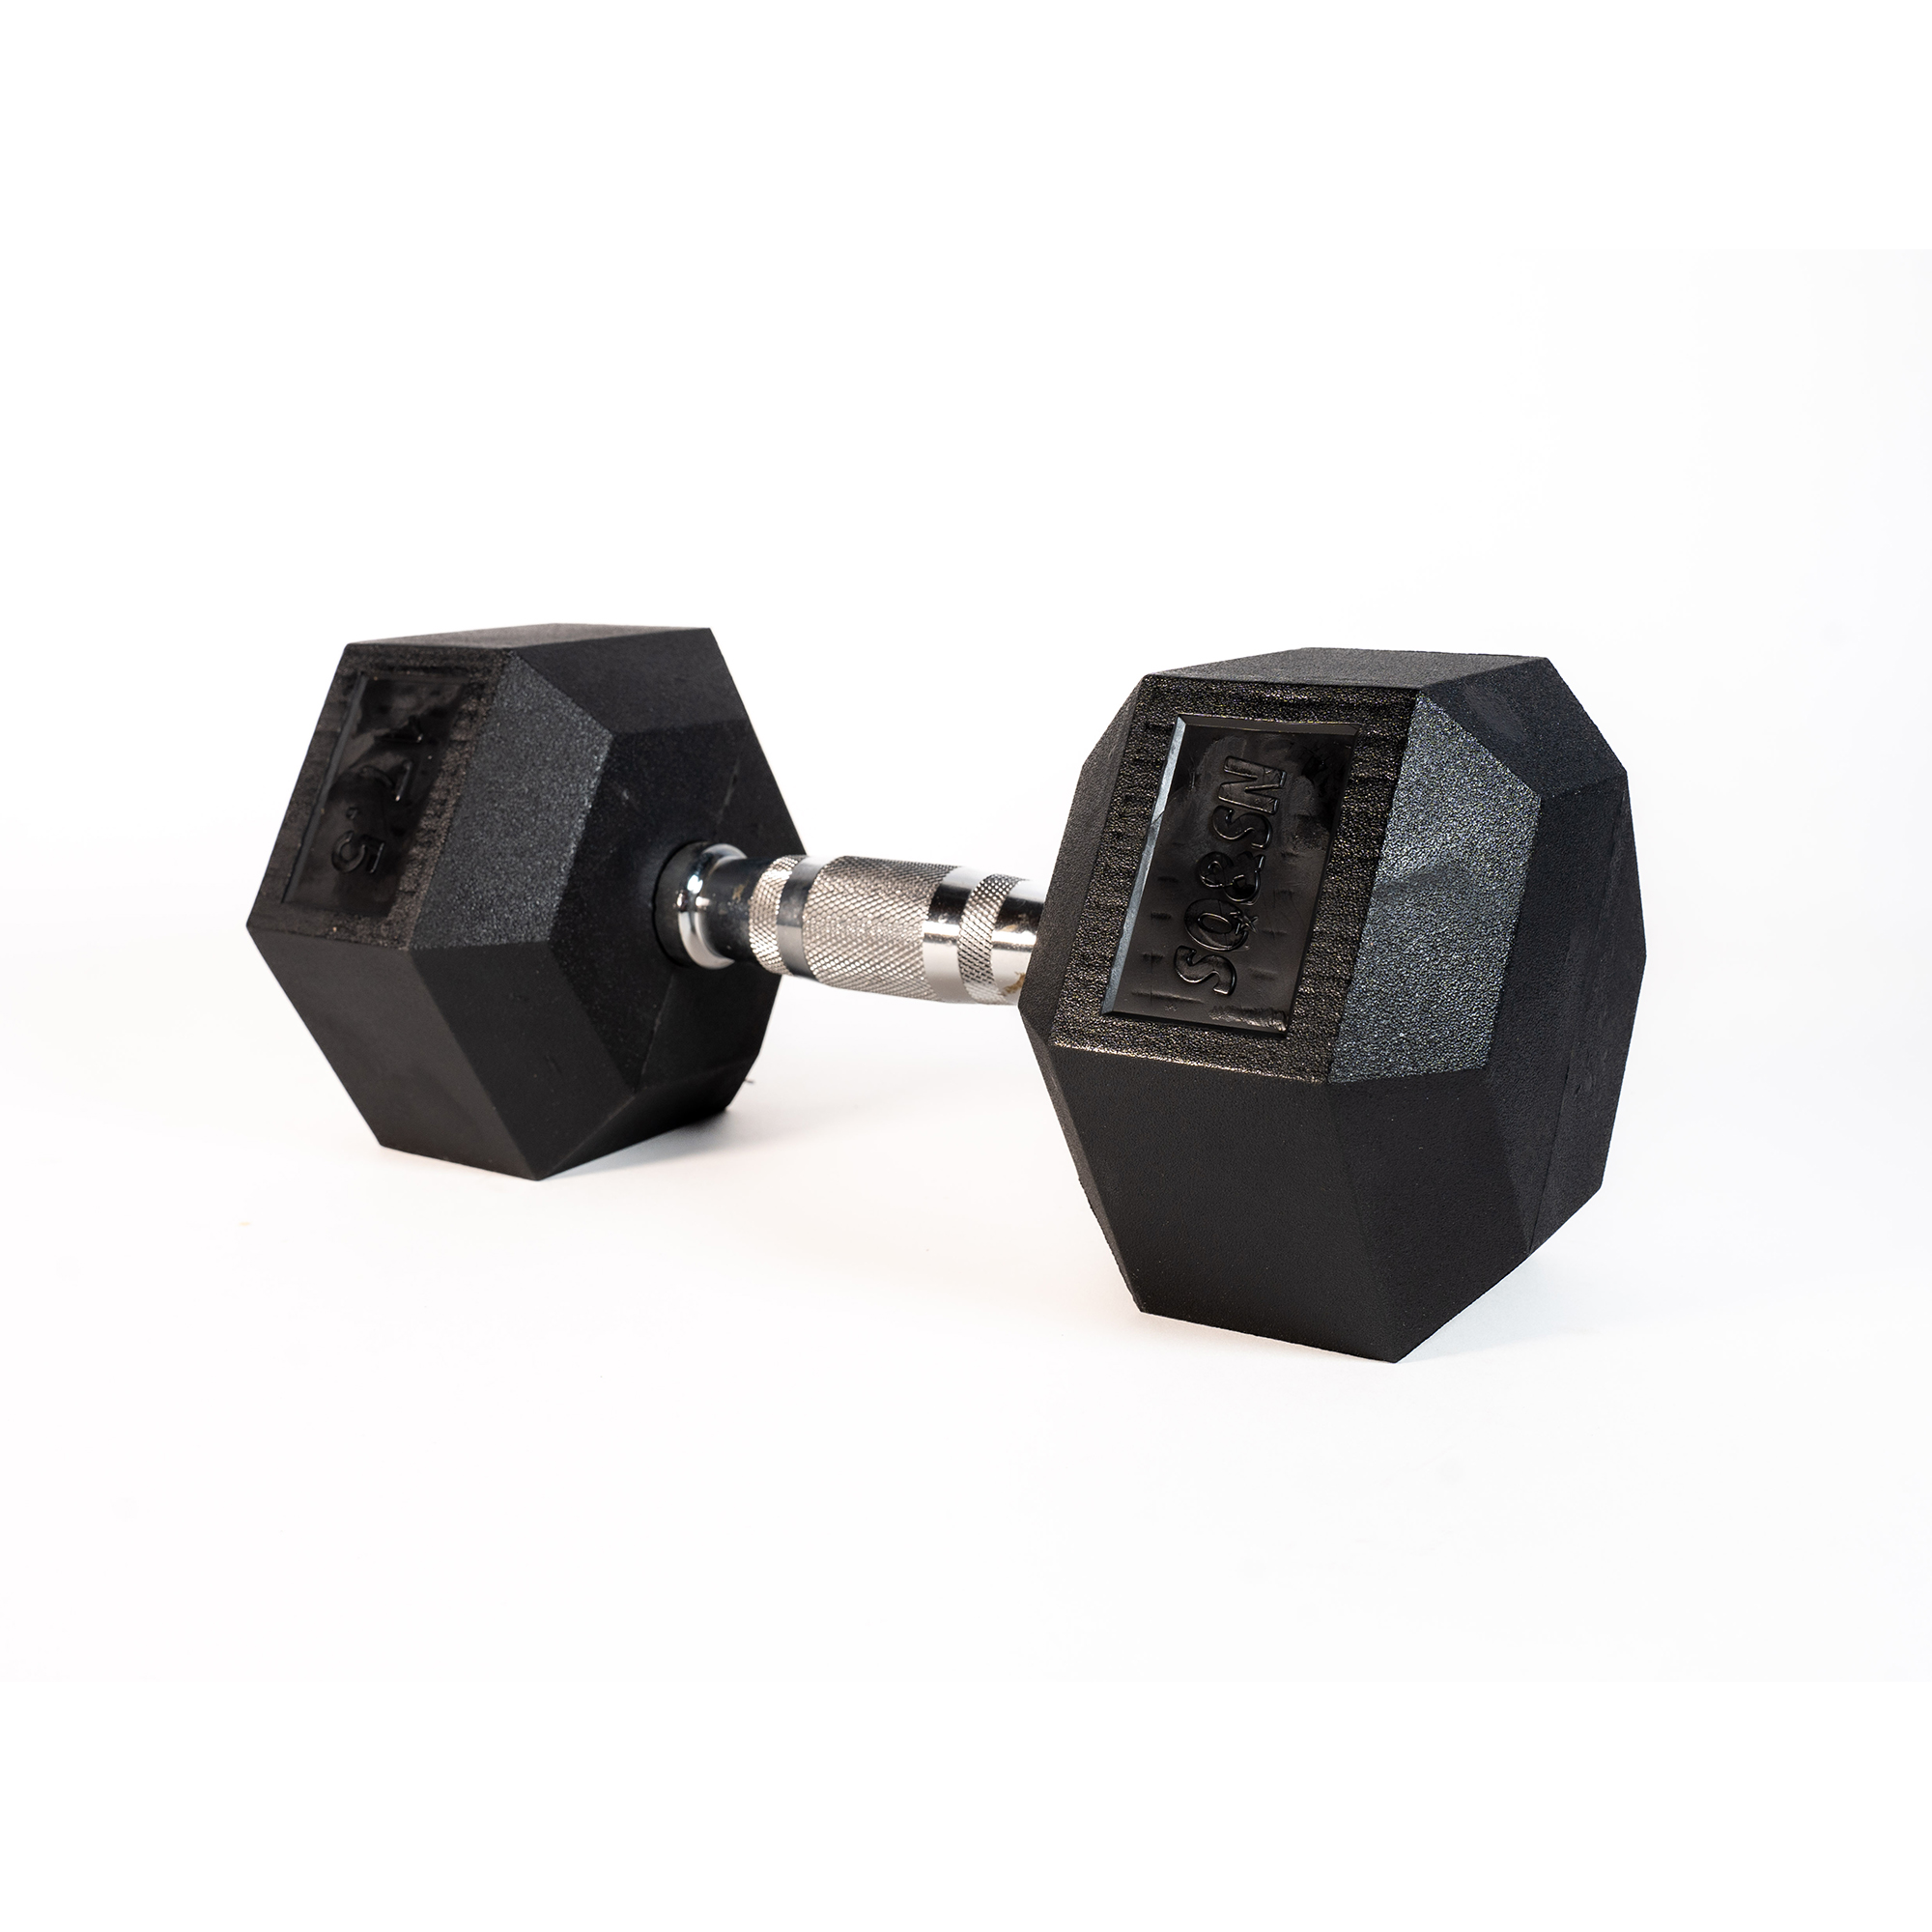 Brug SQ&SN Hexagon Håndvægt (17,5 kg) med forkromet greb. Udstyr til crossfit træning, styrketræning og funktionel træning til en forbedret oplevelse